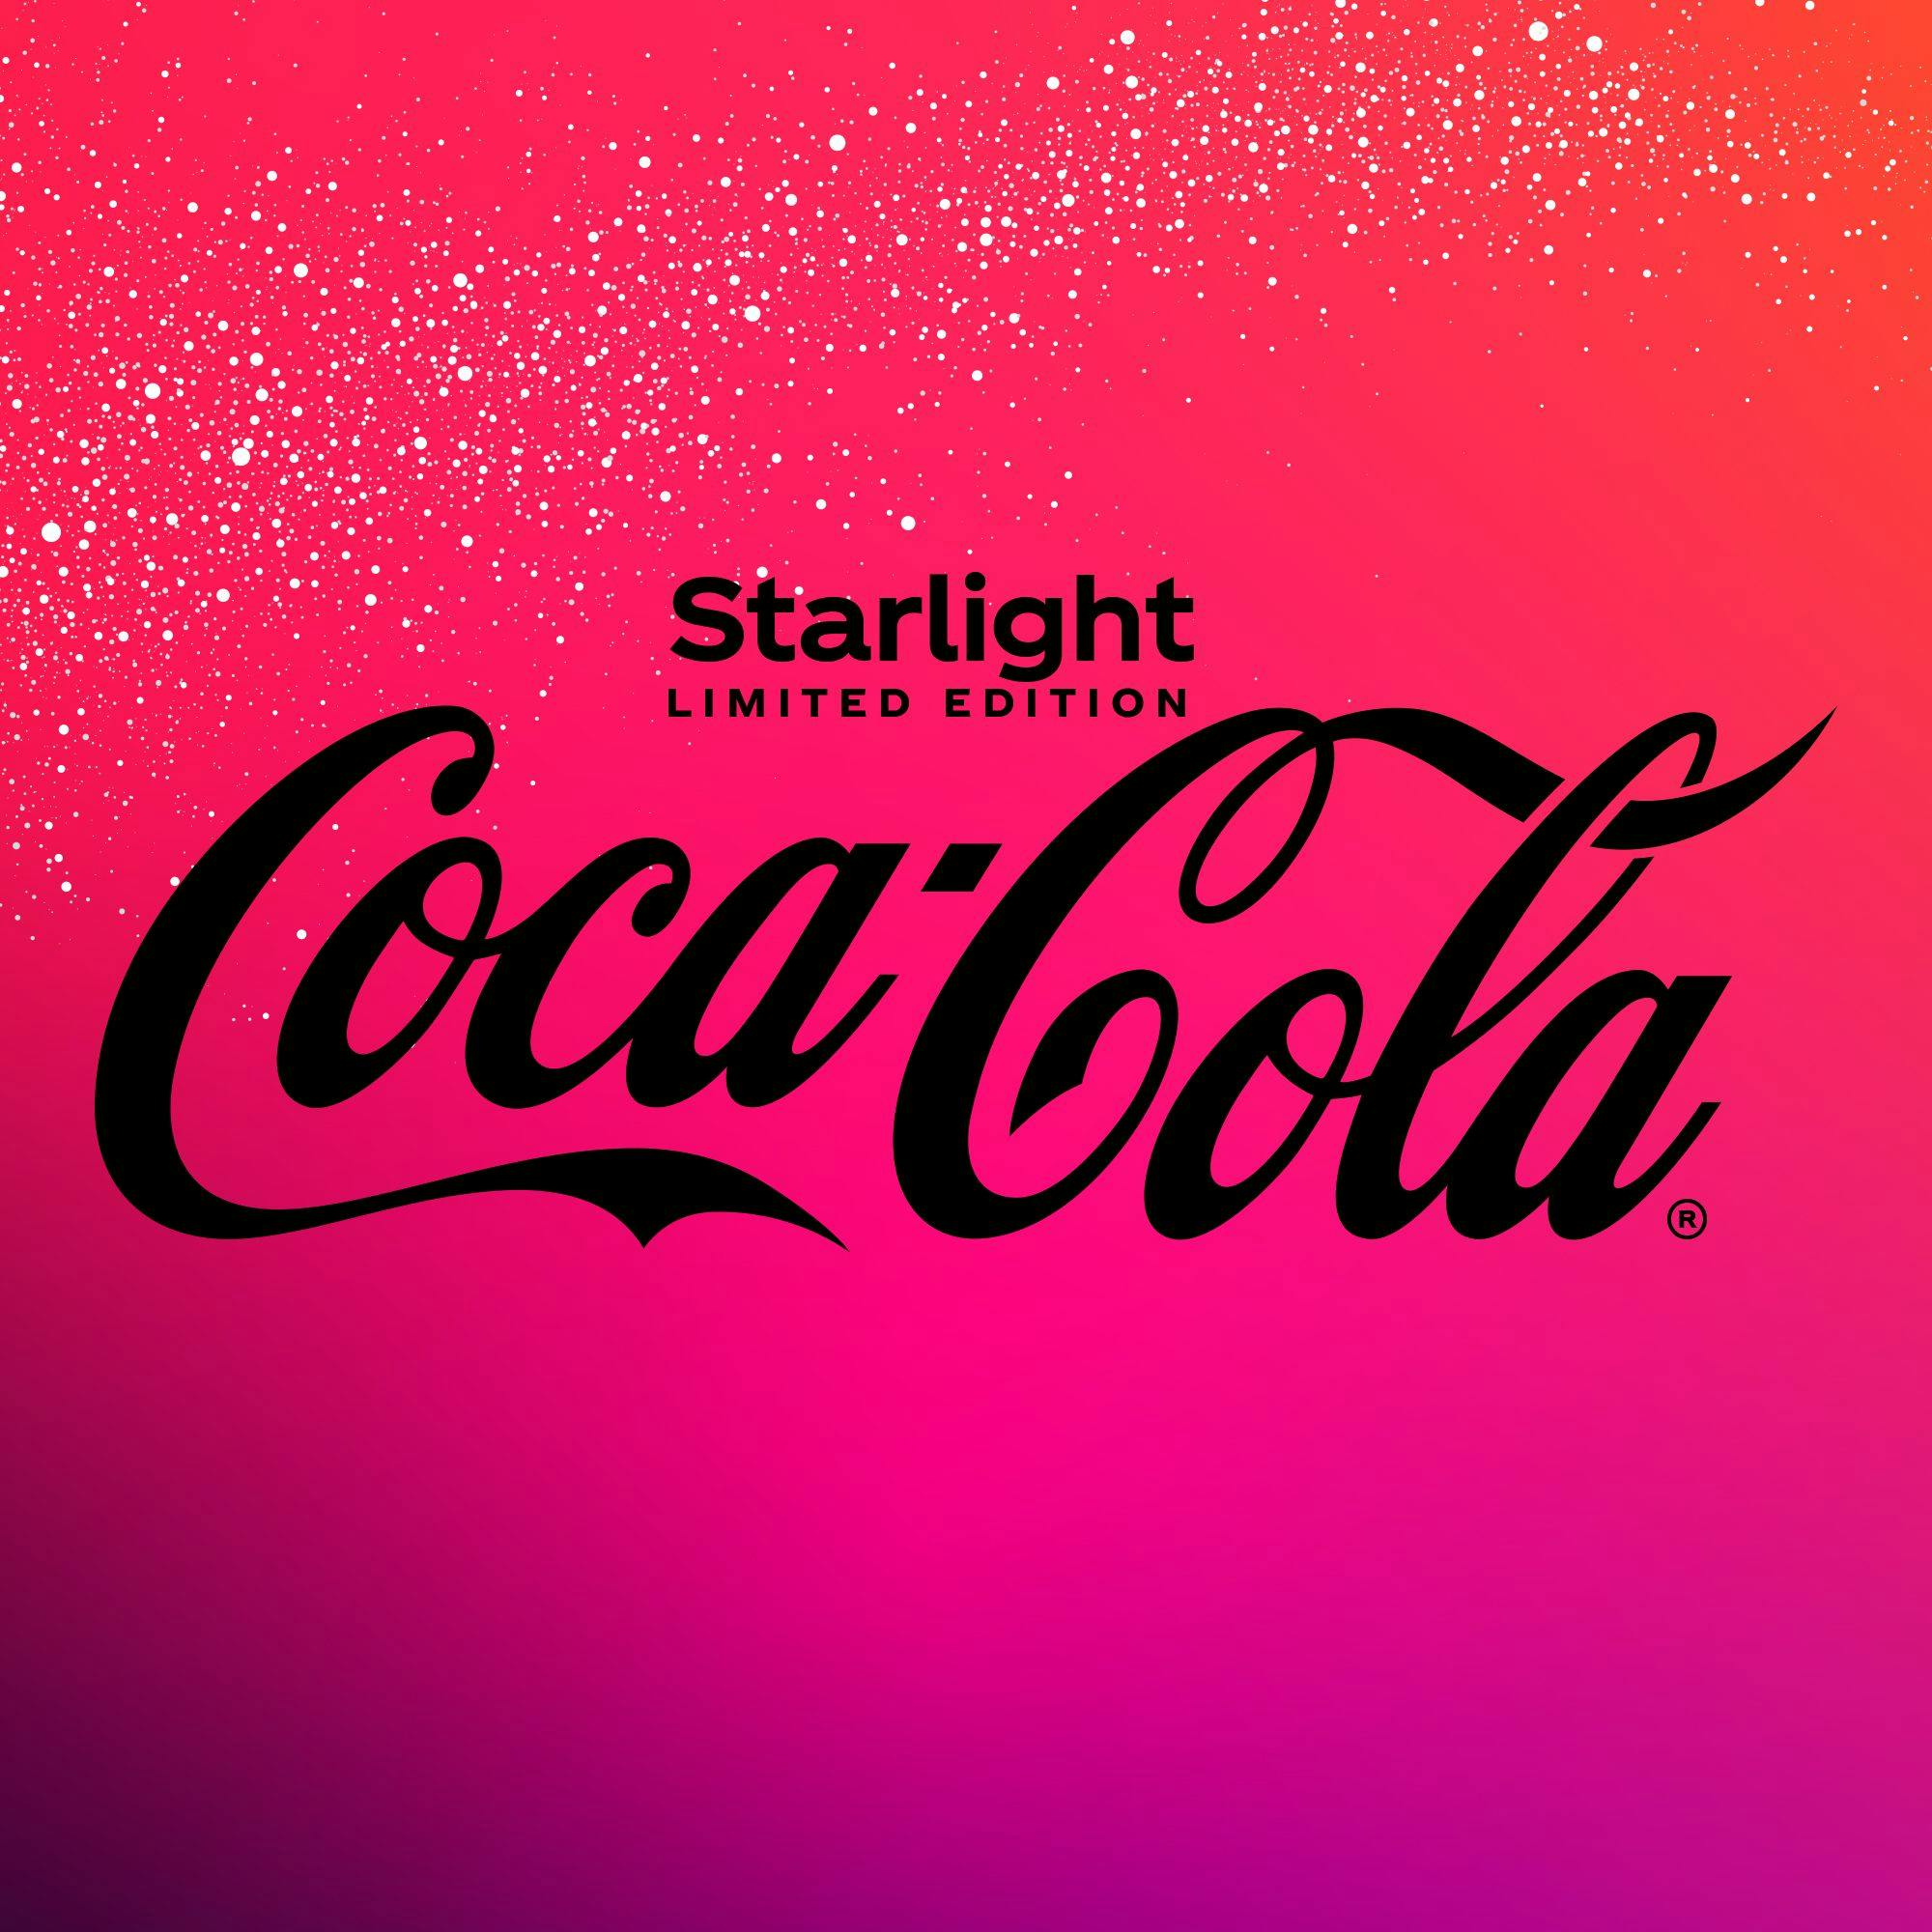 CocaCola Starlight